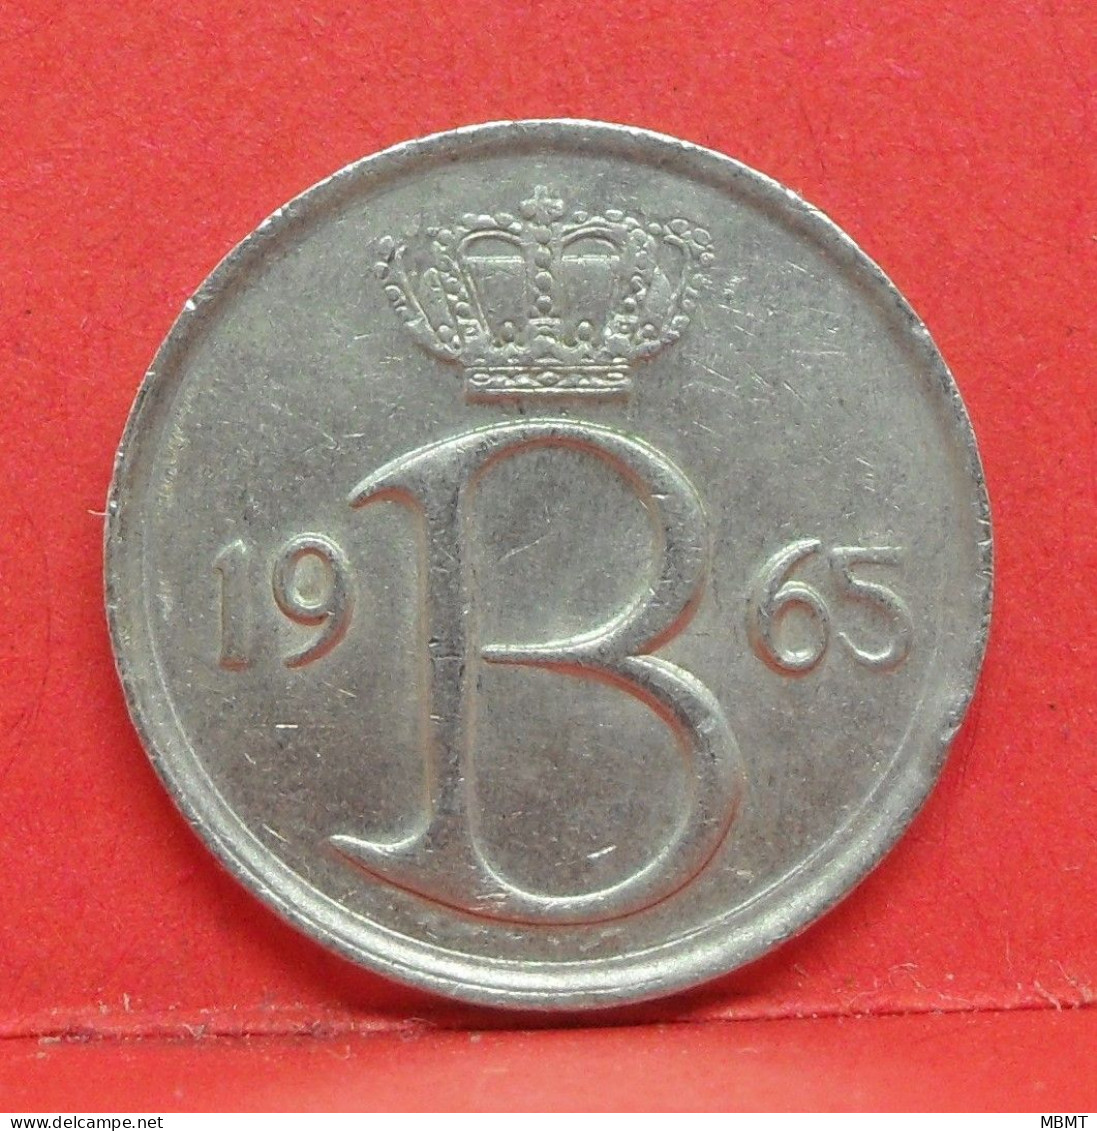 25 Centimes 1965 - TTB - Pièce Monnaie Belgique - Article N°1682 - 25 Cents